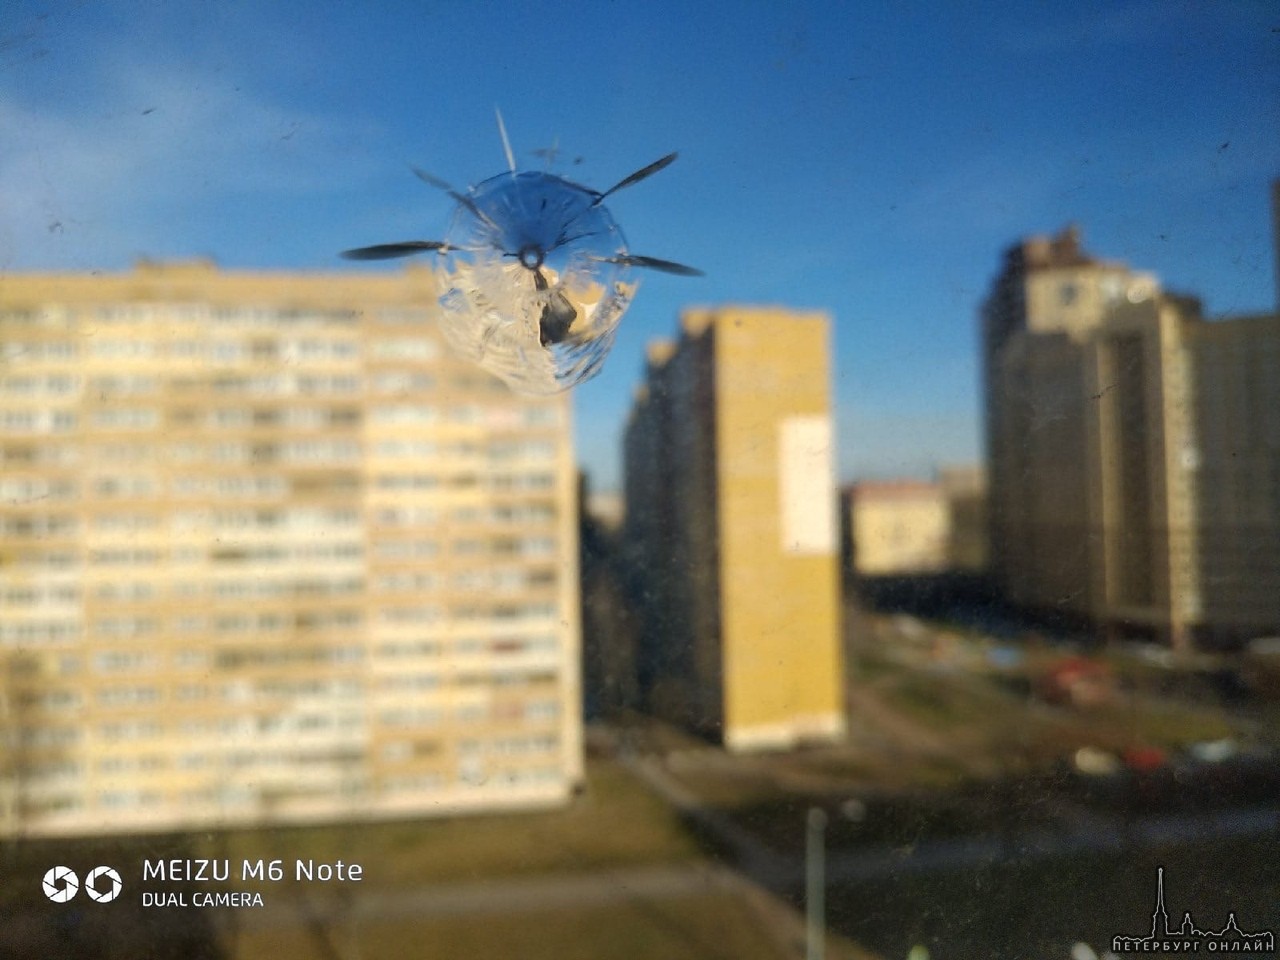 Подруге на Кузнецова 29к1 расстреляли окно какие-то непонятные люди, судя по всему из окон дома напр...